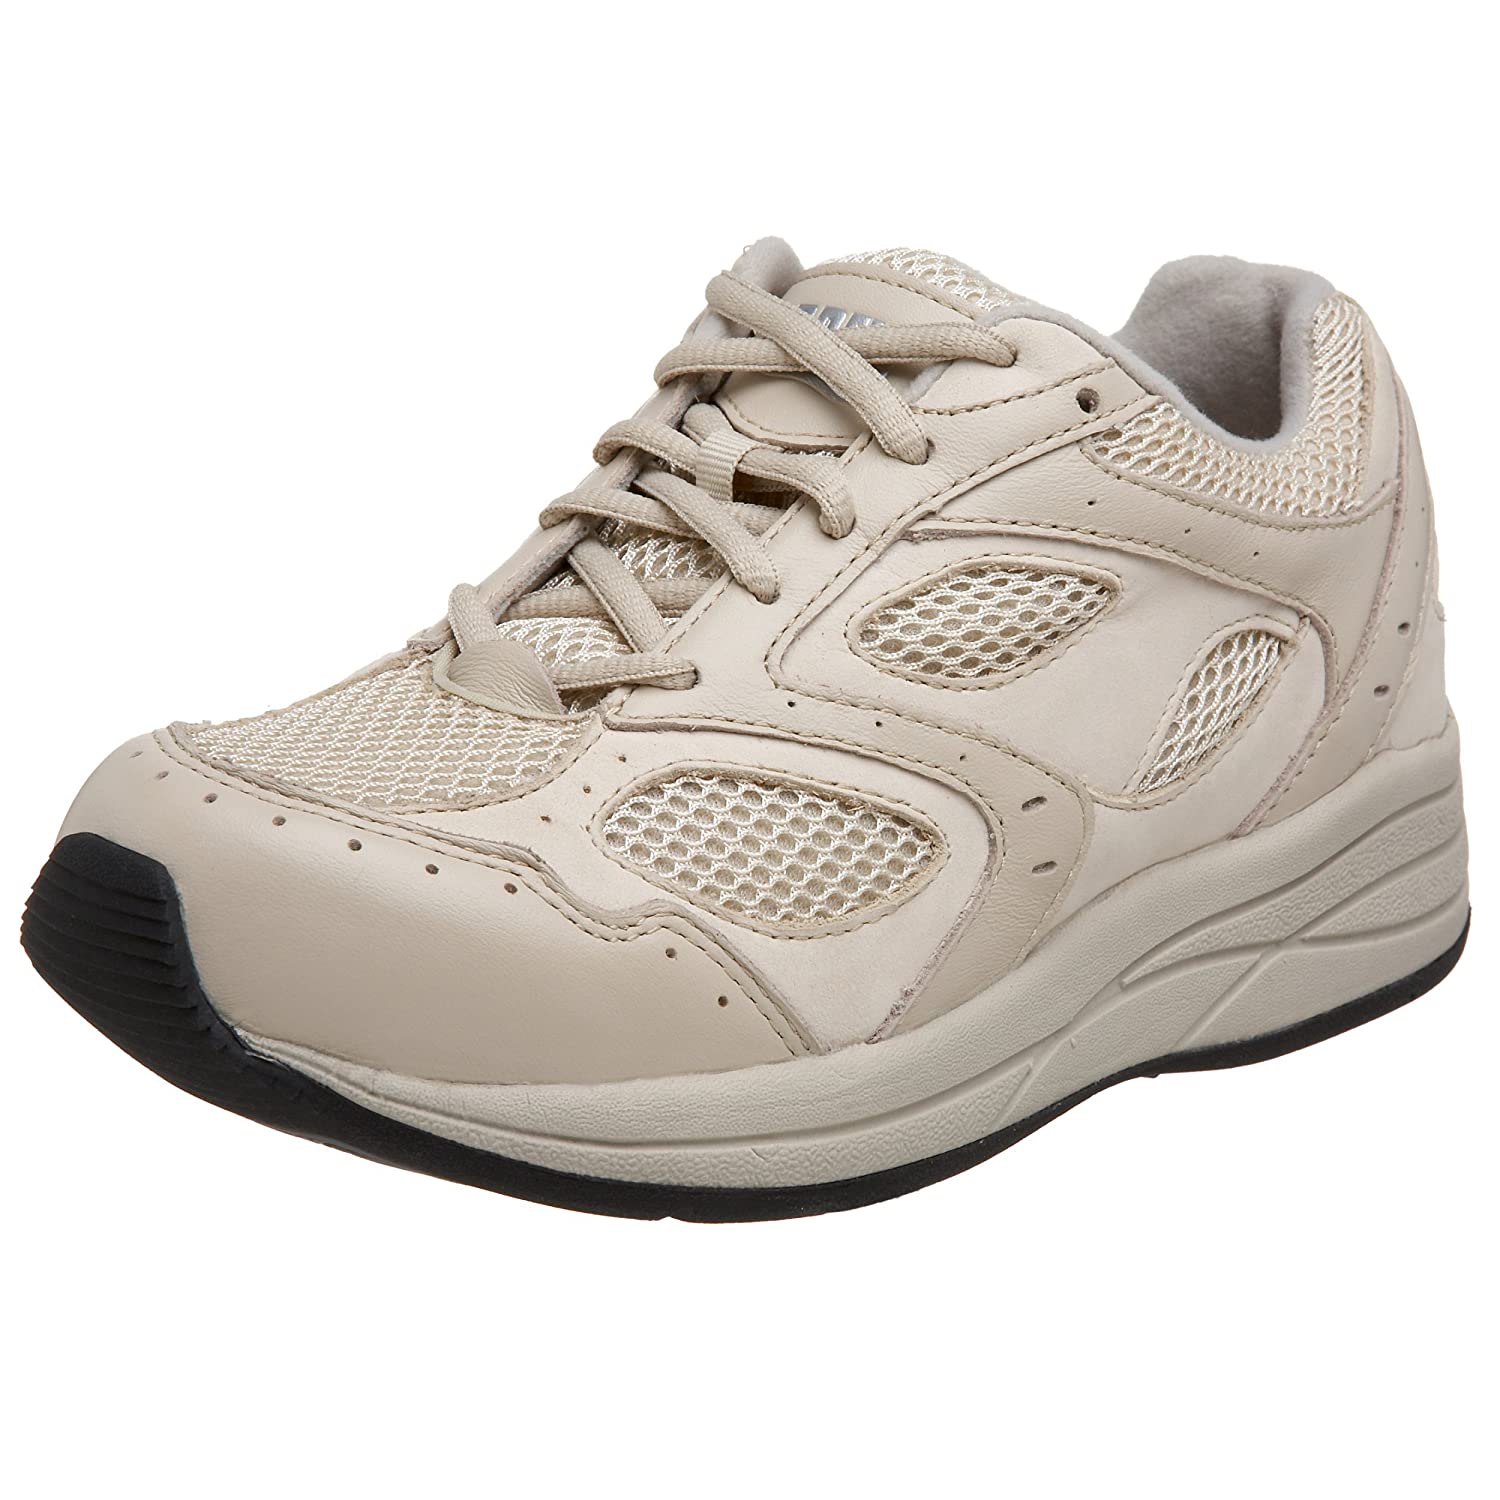 Drew Shoe レディース B001L5SUHI 7.5 2A(N) US|オフホワイト/オフホワイトスポーティ(Bone Calf/Bone sporty) オフホワイト/オフホワイトスポーティ(Bone Calf/Bone sporty) 7.5 2A(N) US 